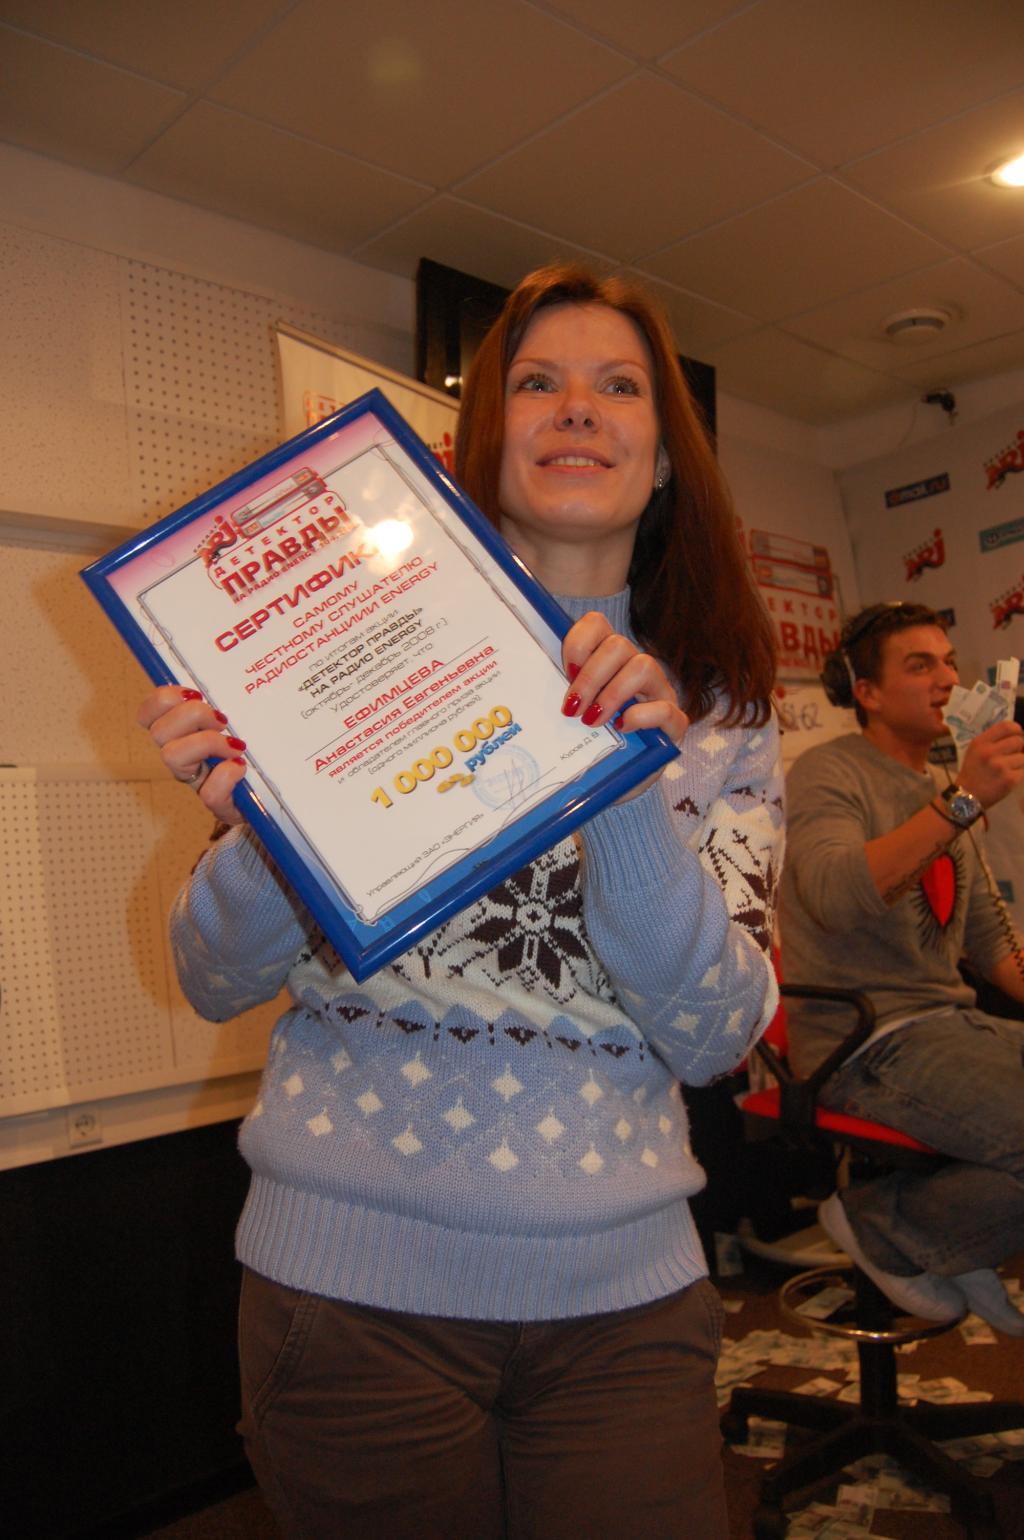 Анастасия Ефимцева - самый честный миллионер!!! - Радио ENERGY: финал акции «Детектор правды» (Останкино, эфирная студия Радио ENERGY) 2008-12-19 09:51:11